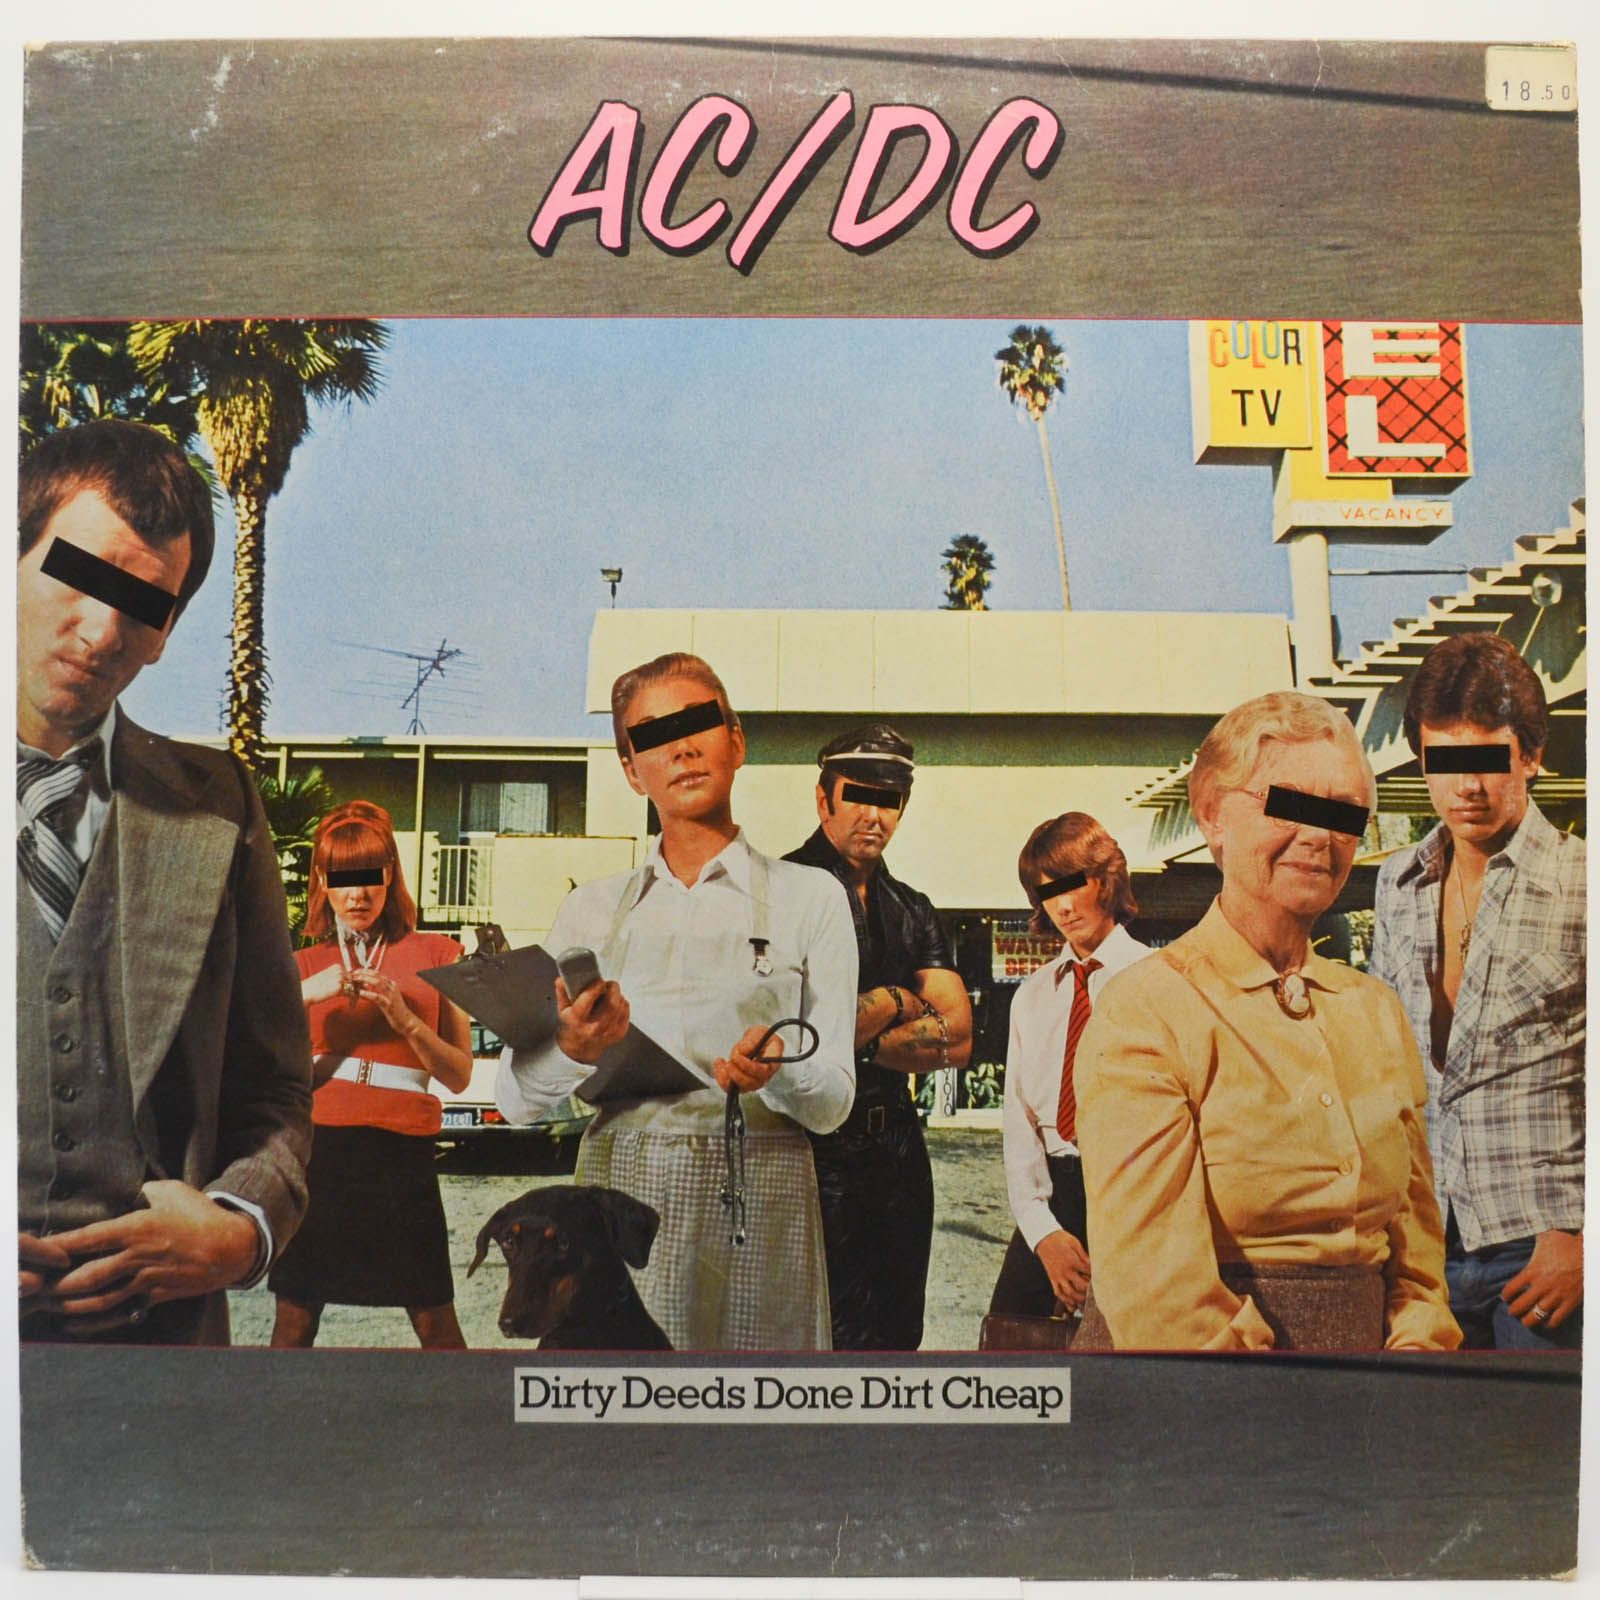 AC/DC — Dirty Deeds Done Dirt Cheap, 1976